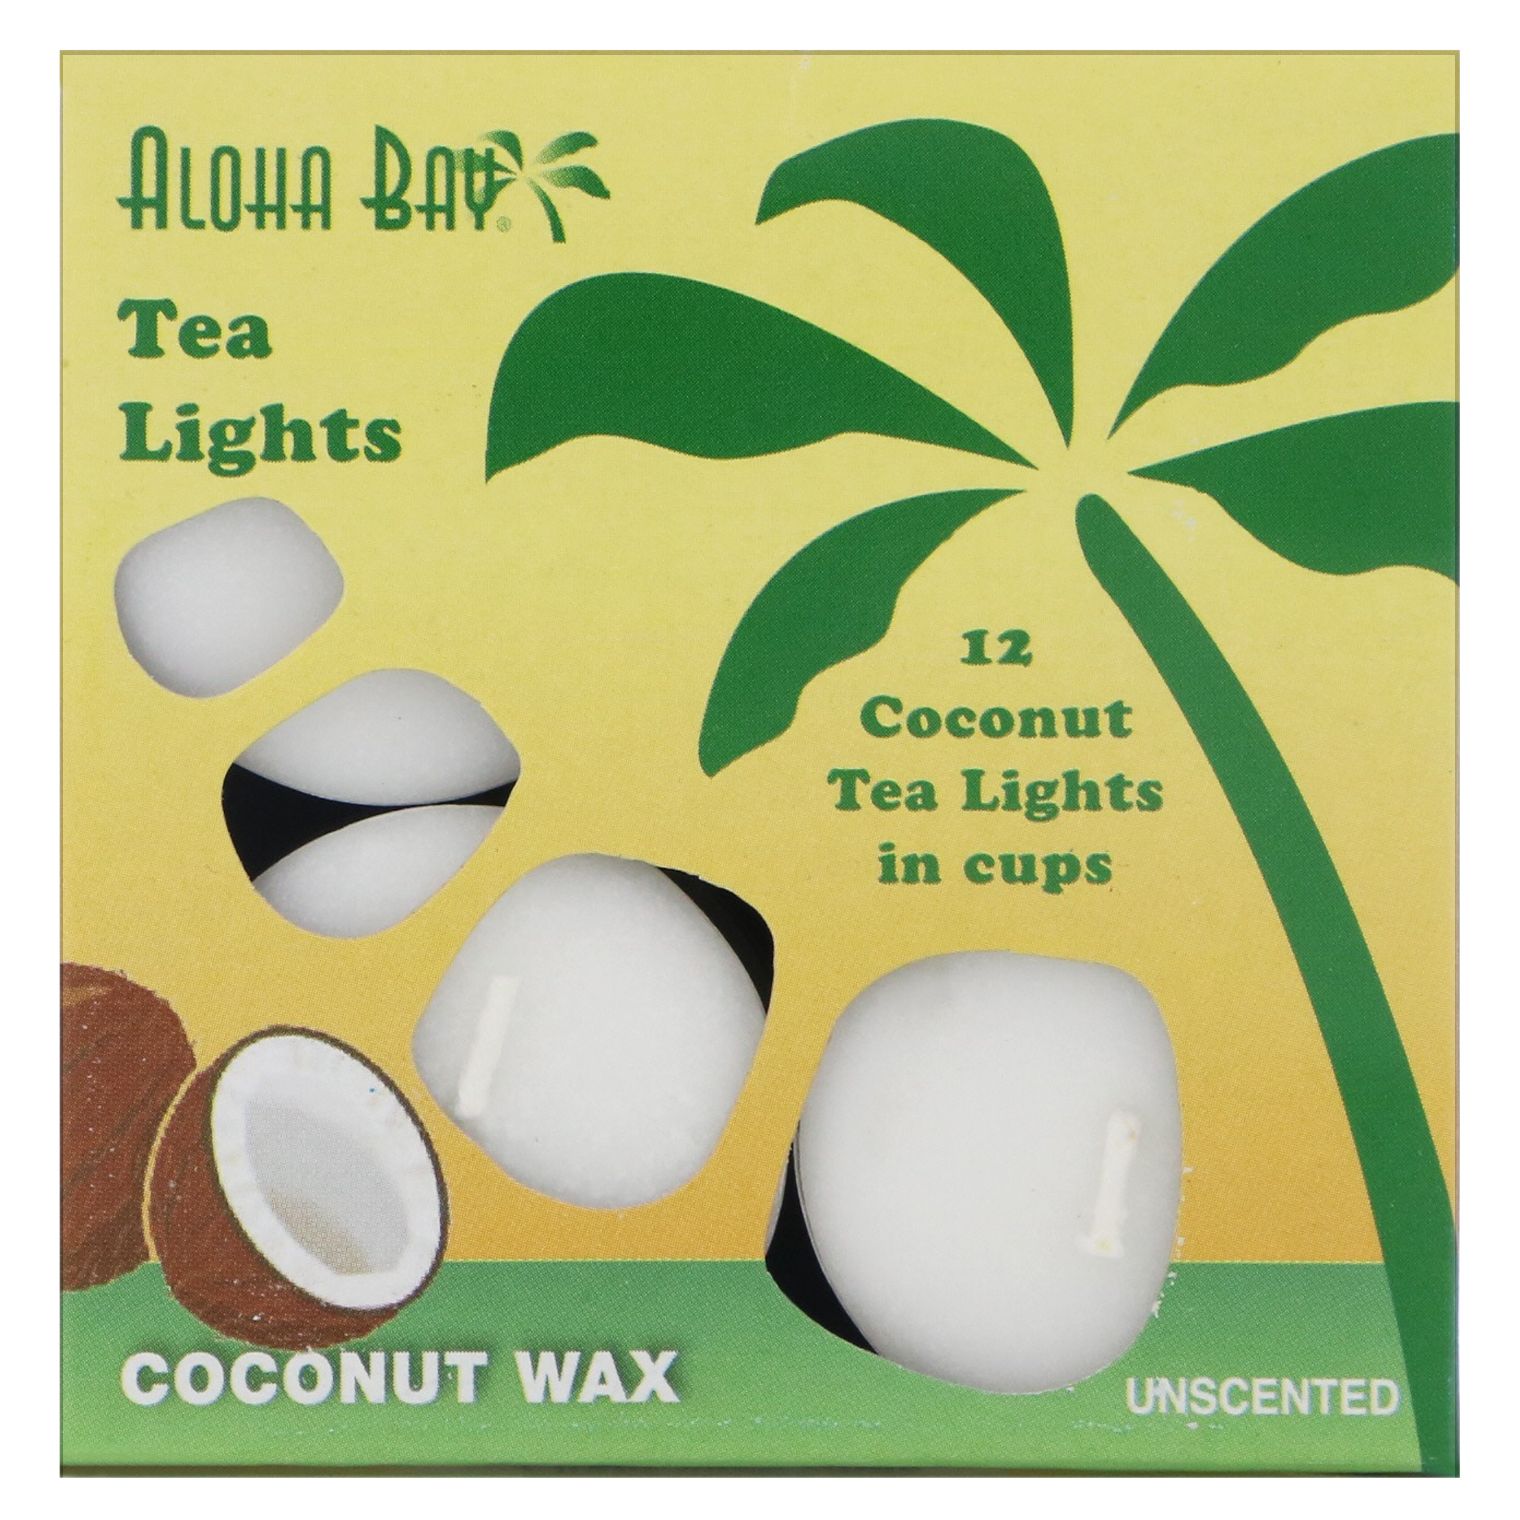 Aloha Bay Восковые кокосовые свечи чайные огоньки без запаха белые 12 шт. aloha bay гималайская кристаллическая соль грубого помола 510 г 18 унций